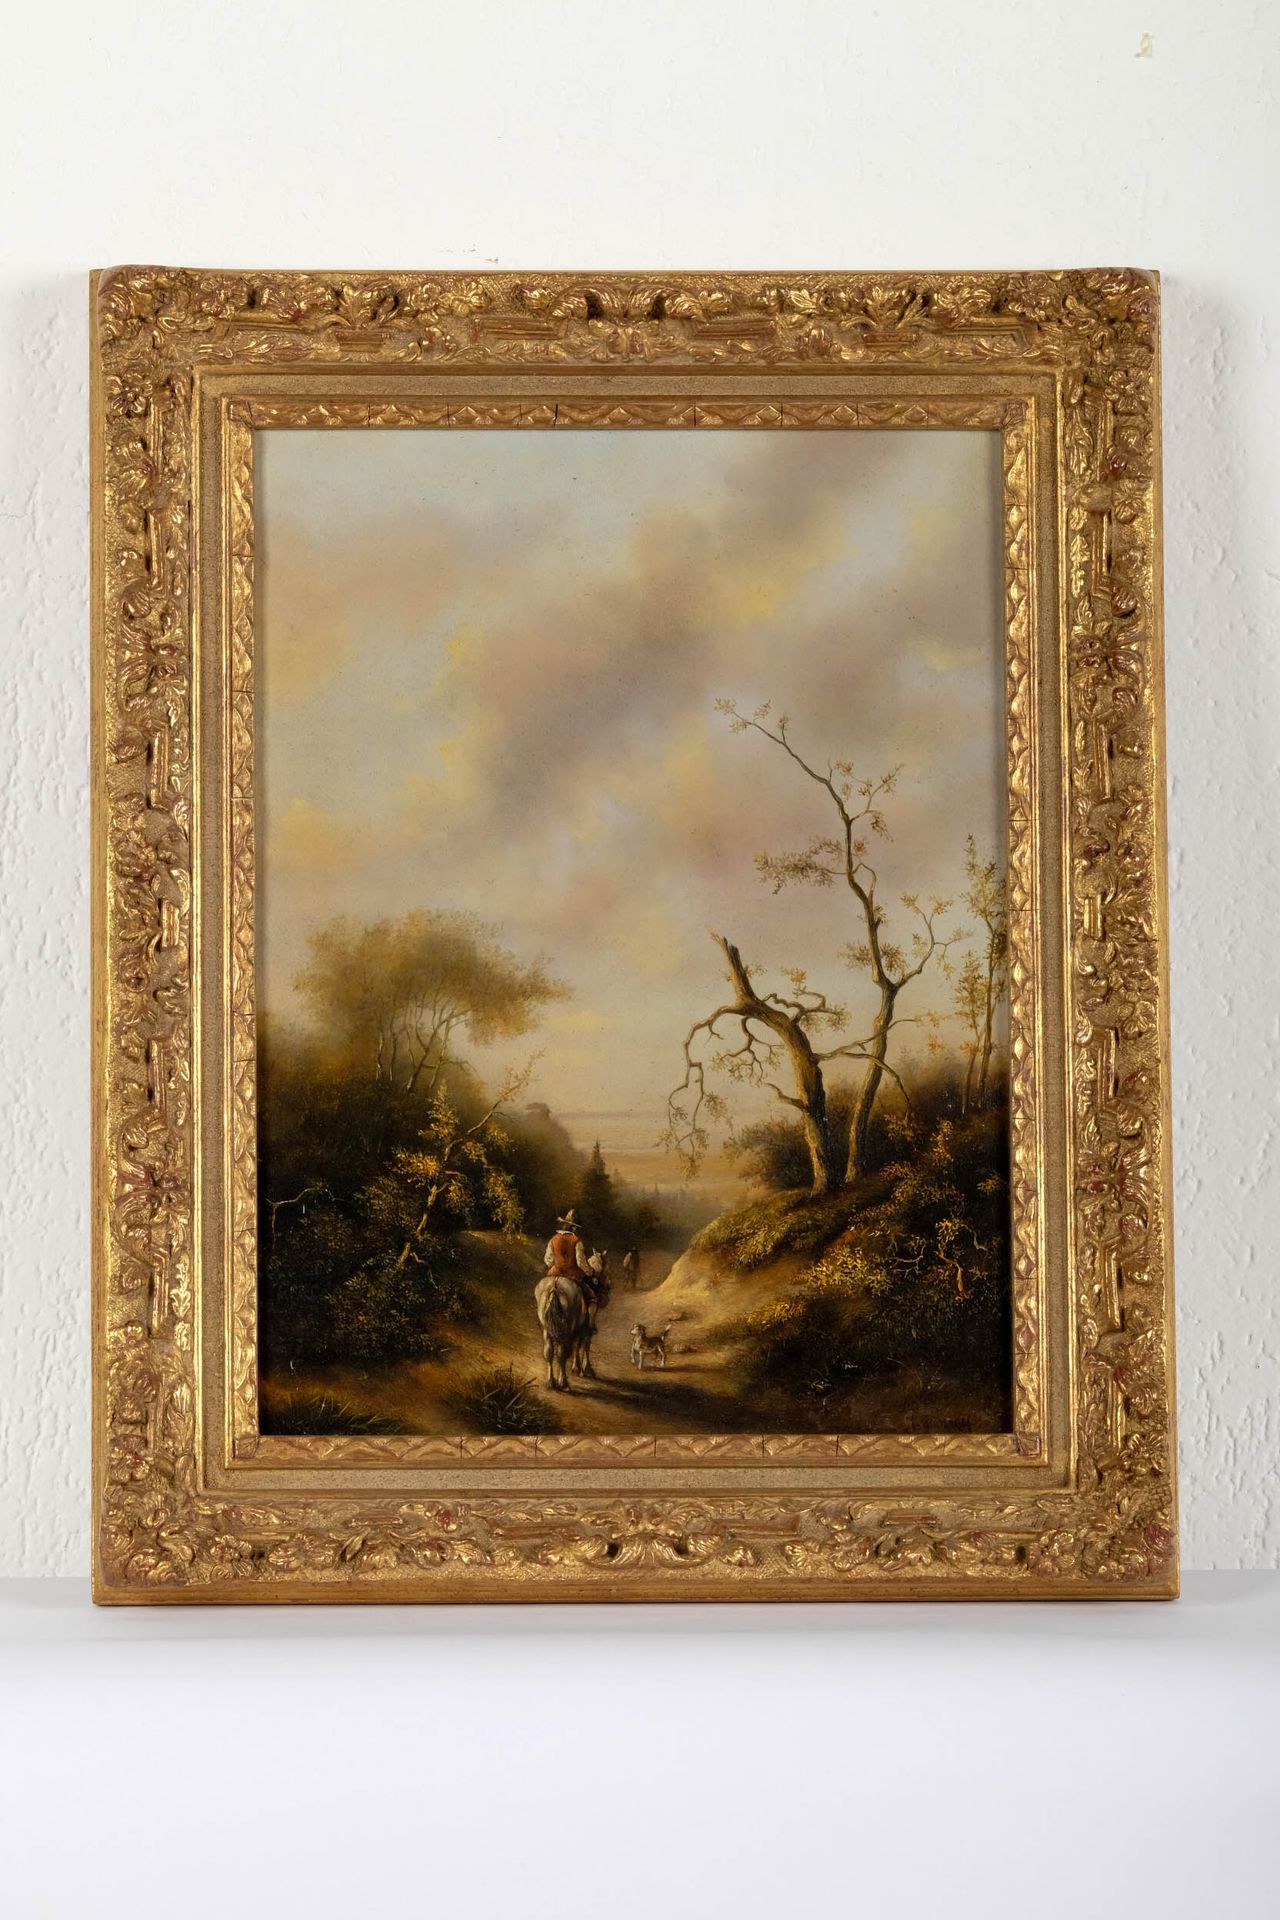 Joseph Quinaux (1822-1895) 
Paysage, encadré, signé en bas à droite, 40 X 30 cm.